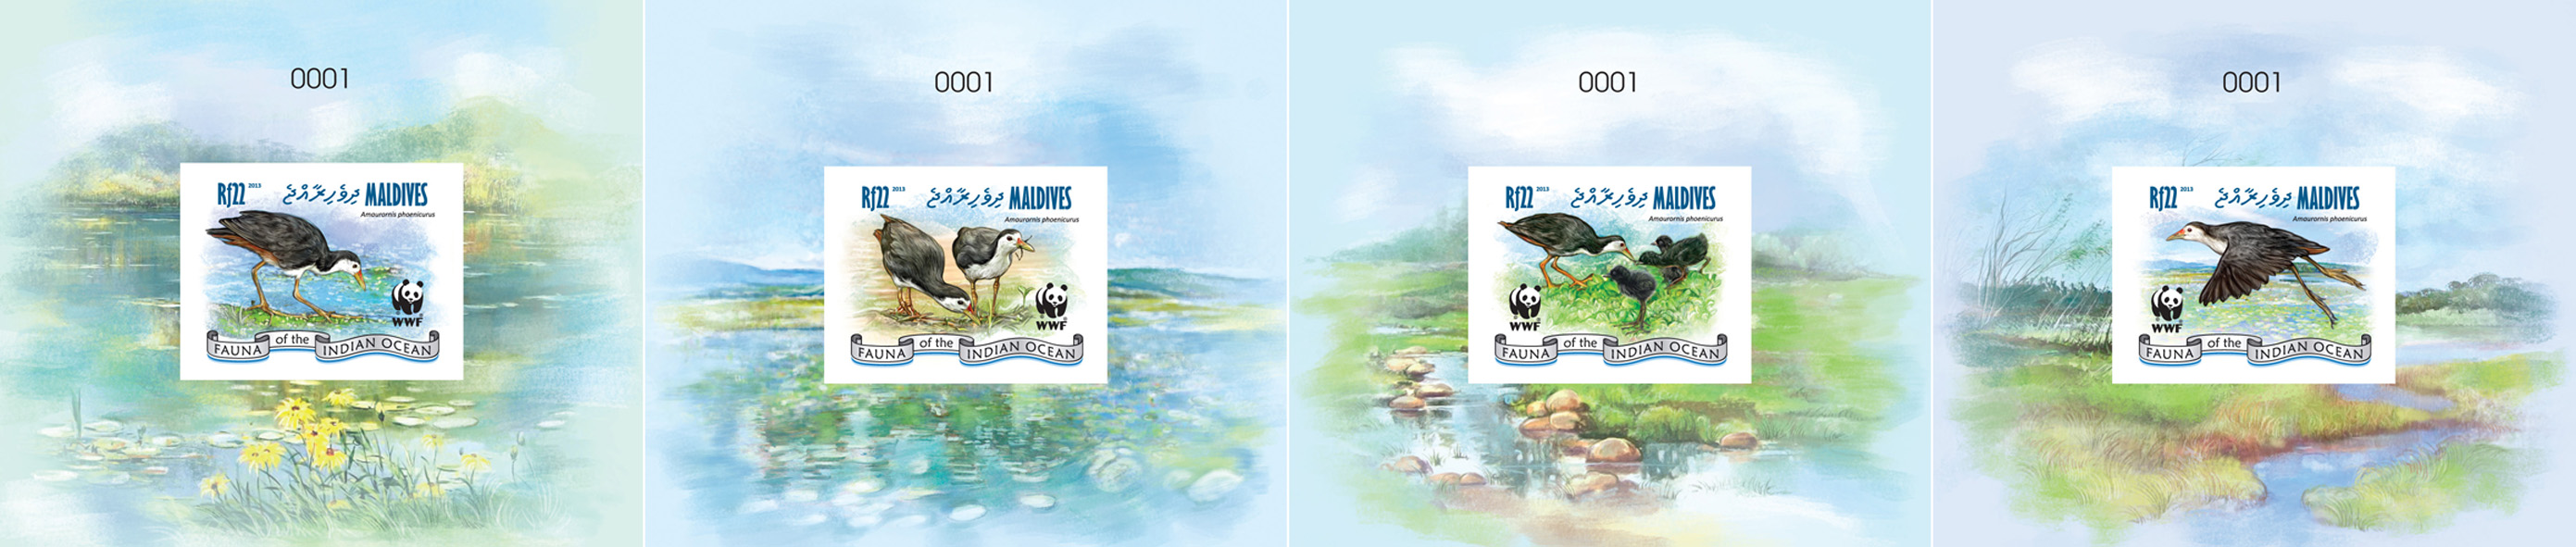 WWF â Birds - Issue of Maldives postage stamps